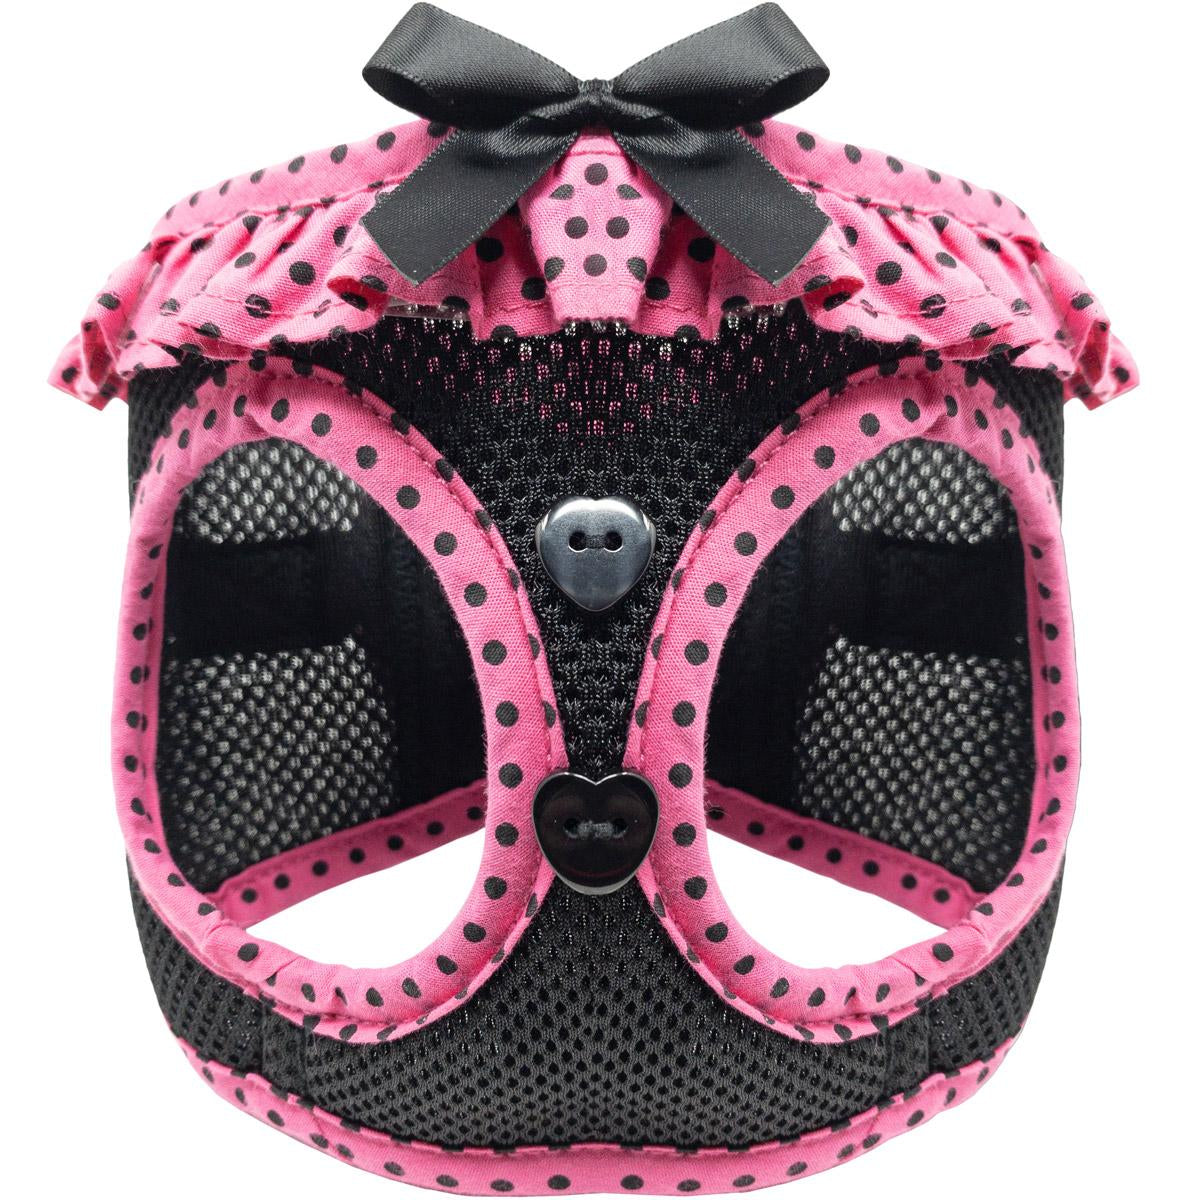 american-river-choke-free-dog-harness-hot-pink-black-polka-dot-6801.jpg